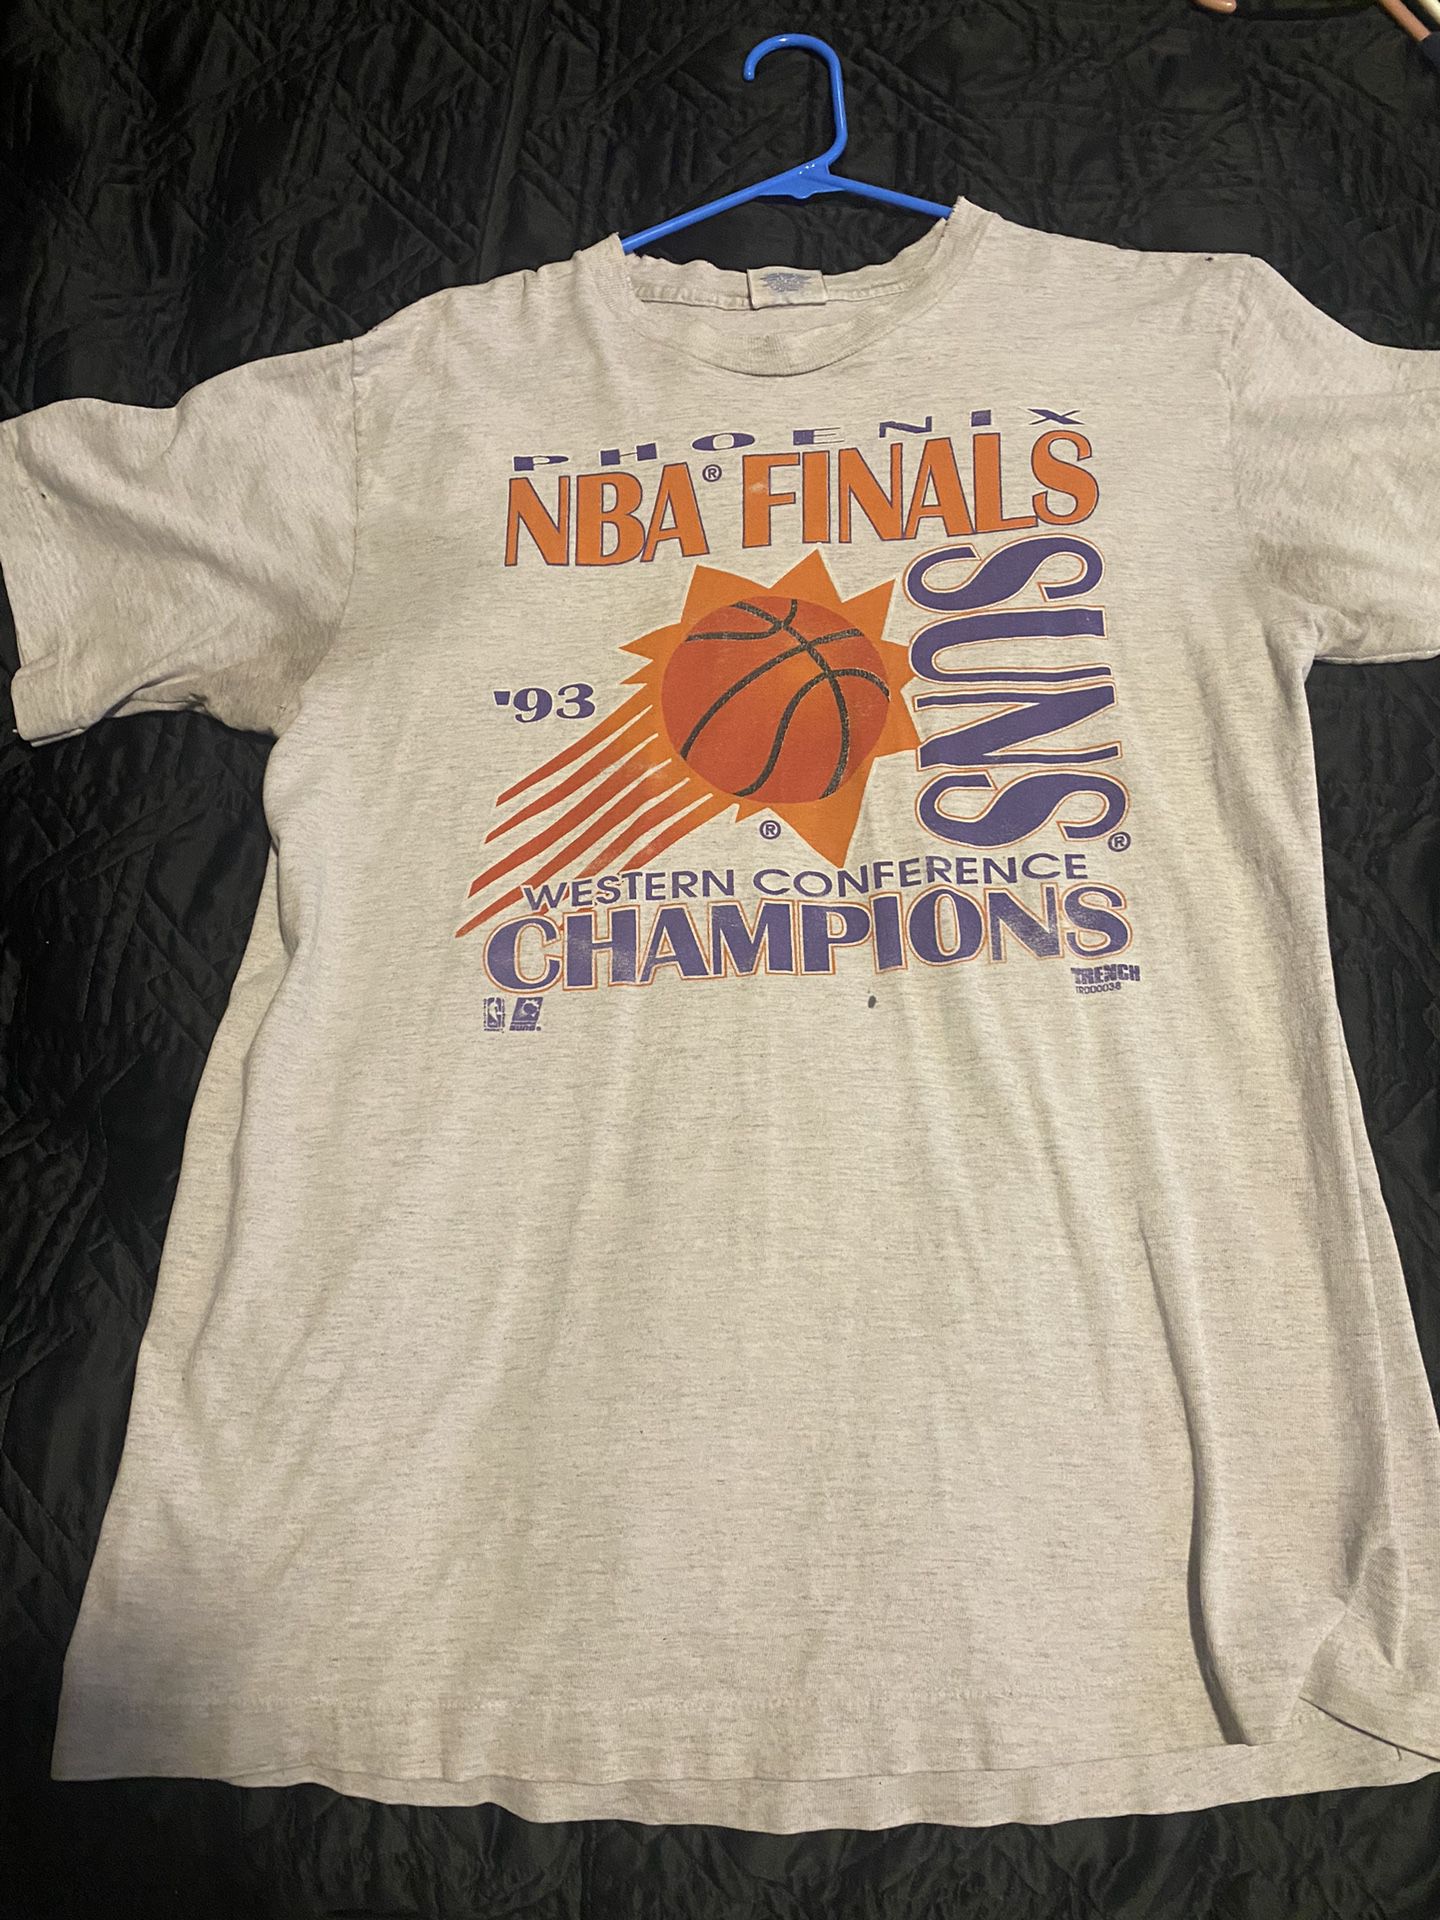 suns 1993 finals shirt